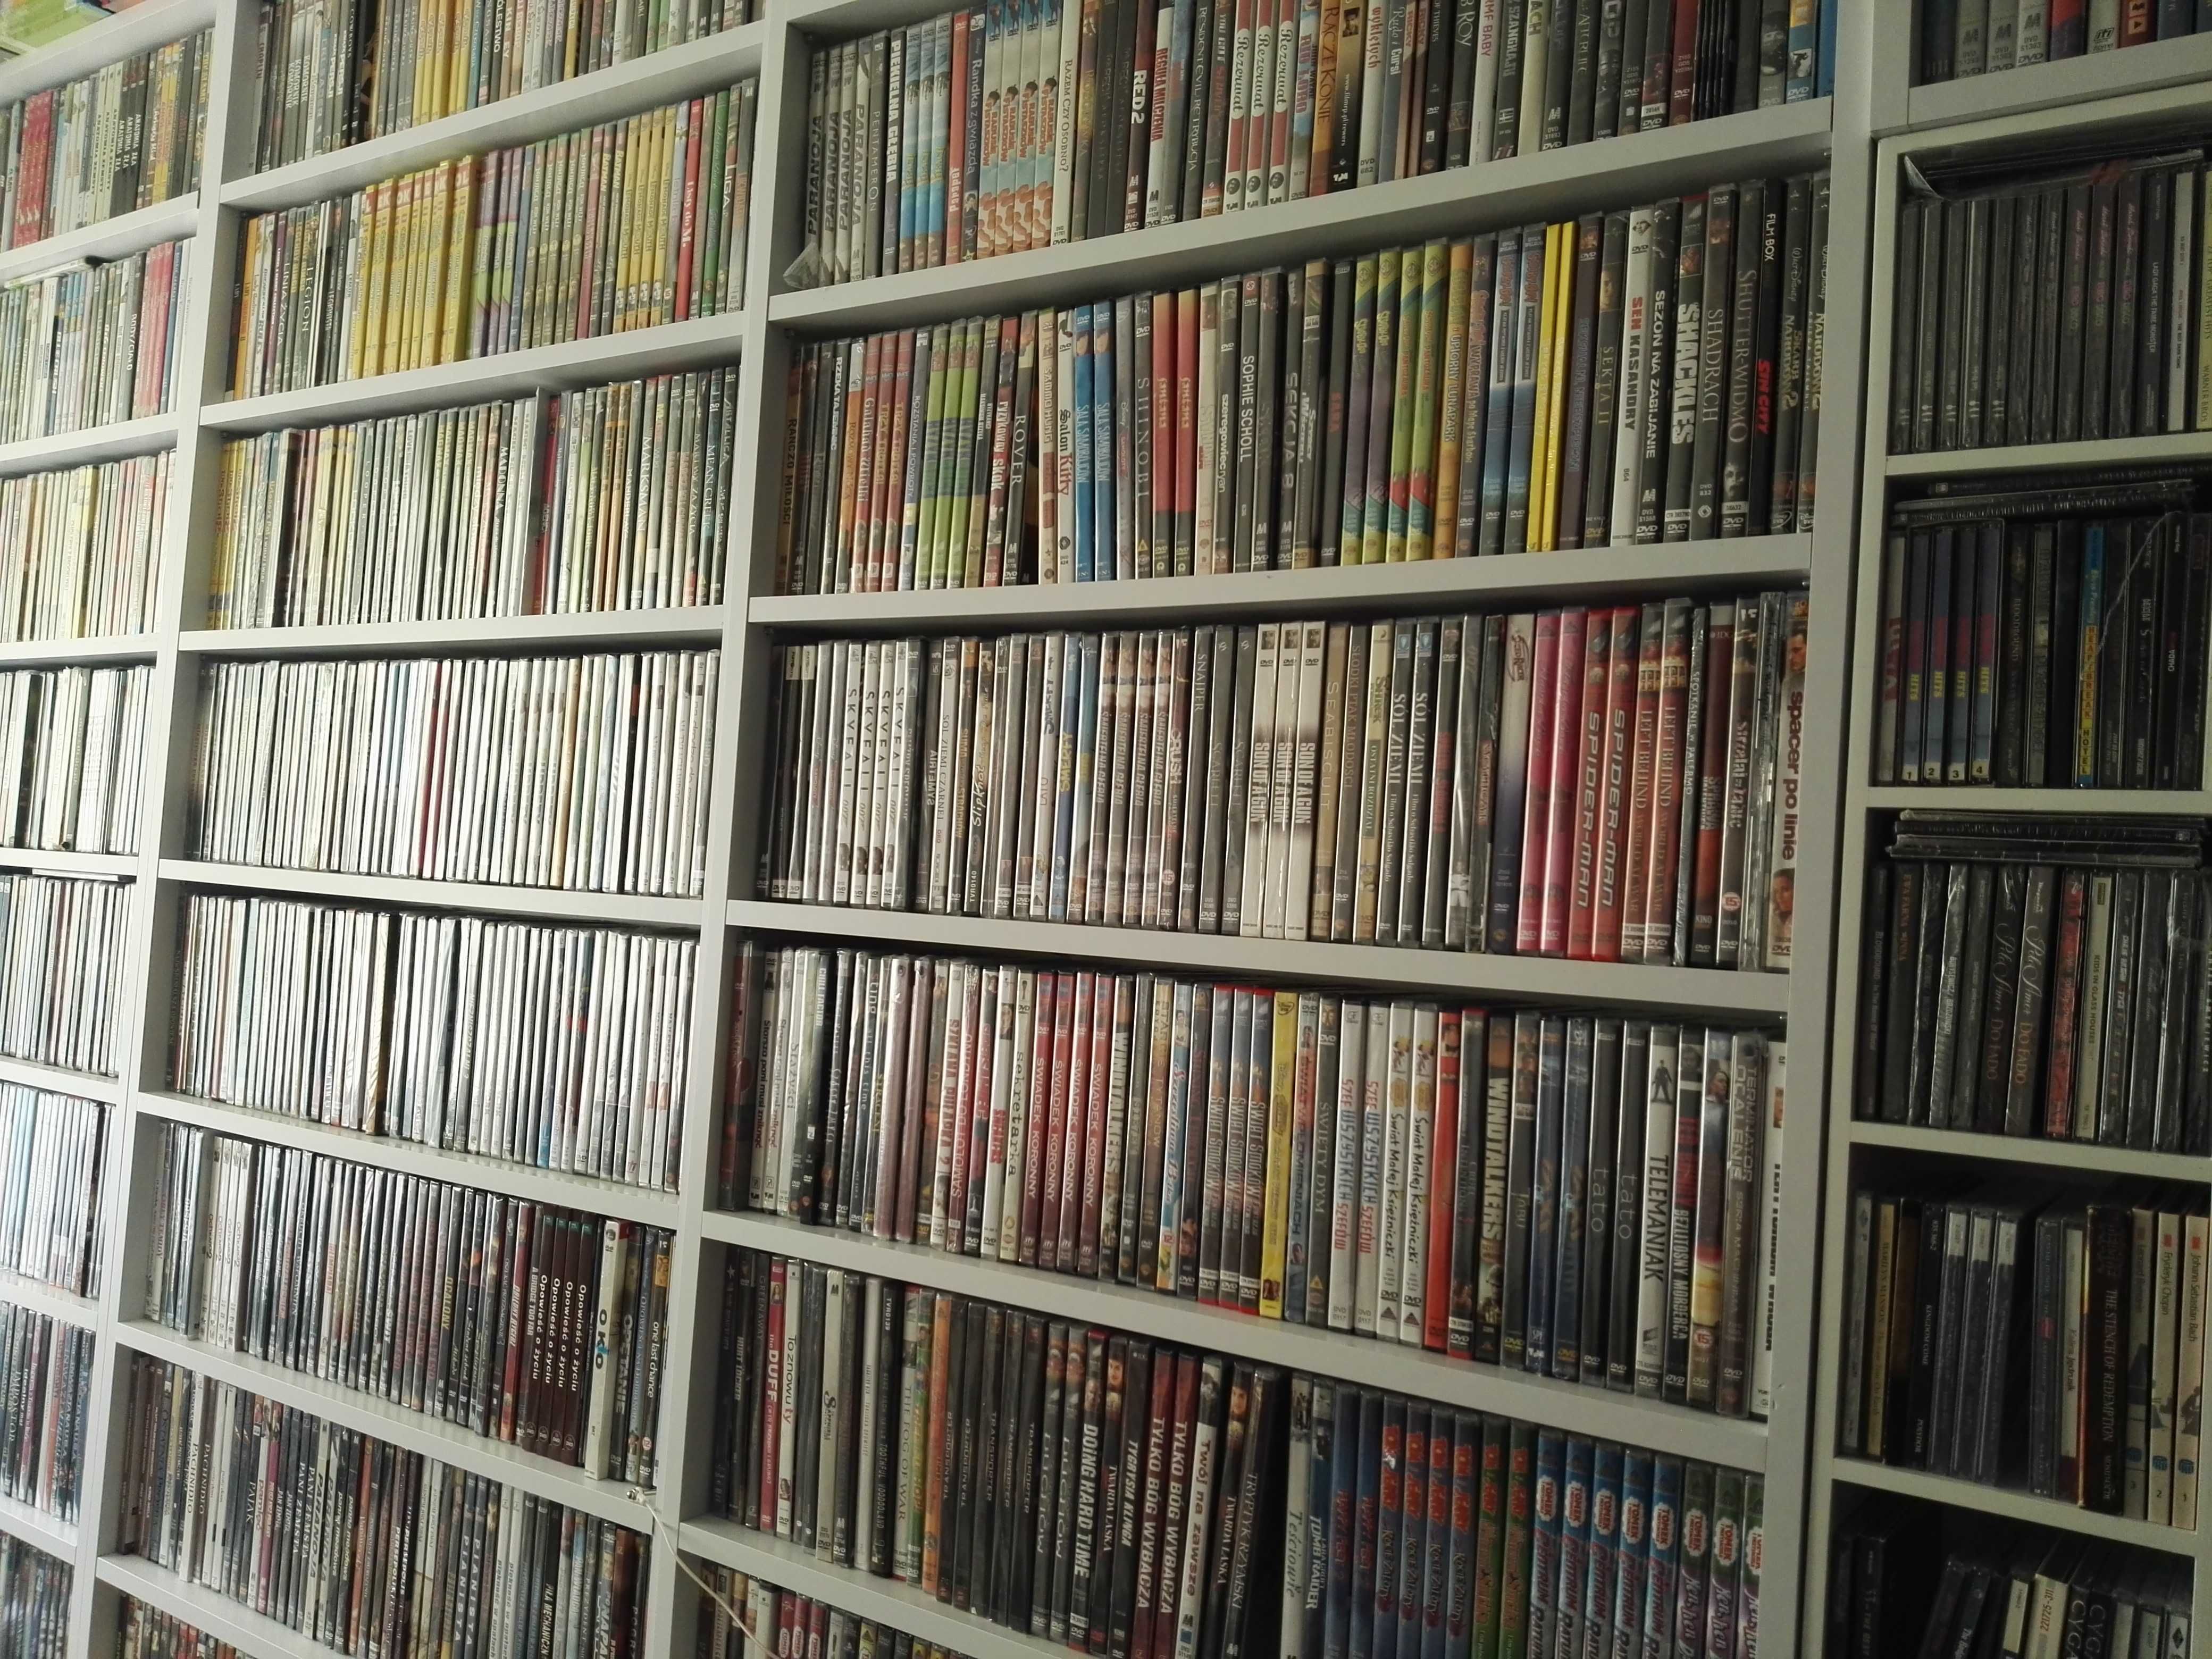 Skup płyt CD, filmy dvd, filmów blu ray, muzyczne plyty, muzyka cd..